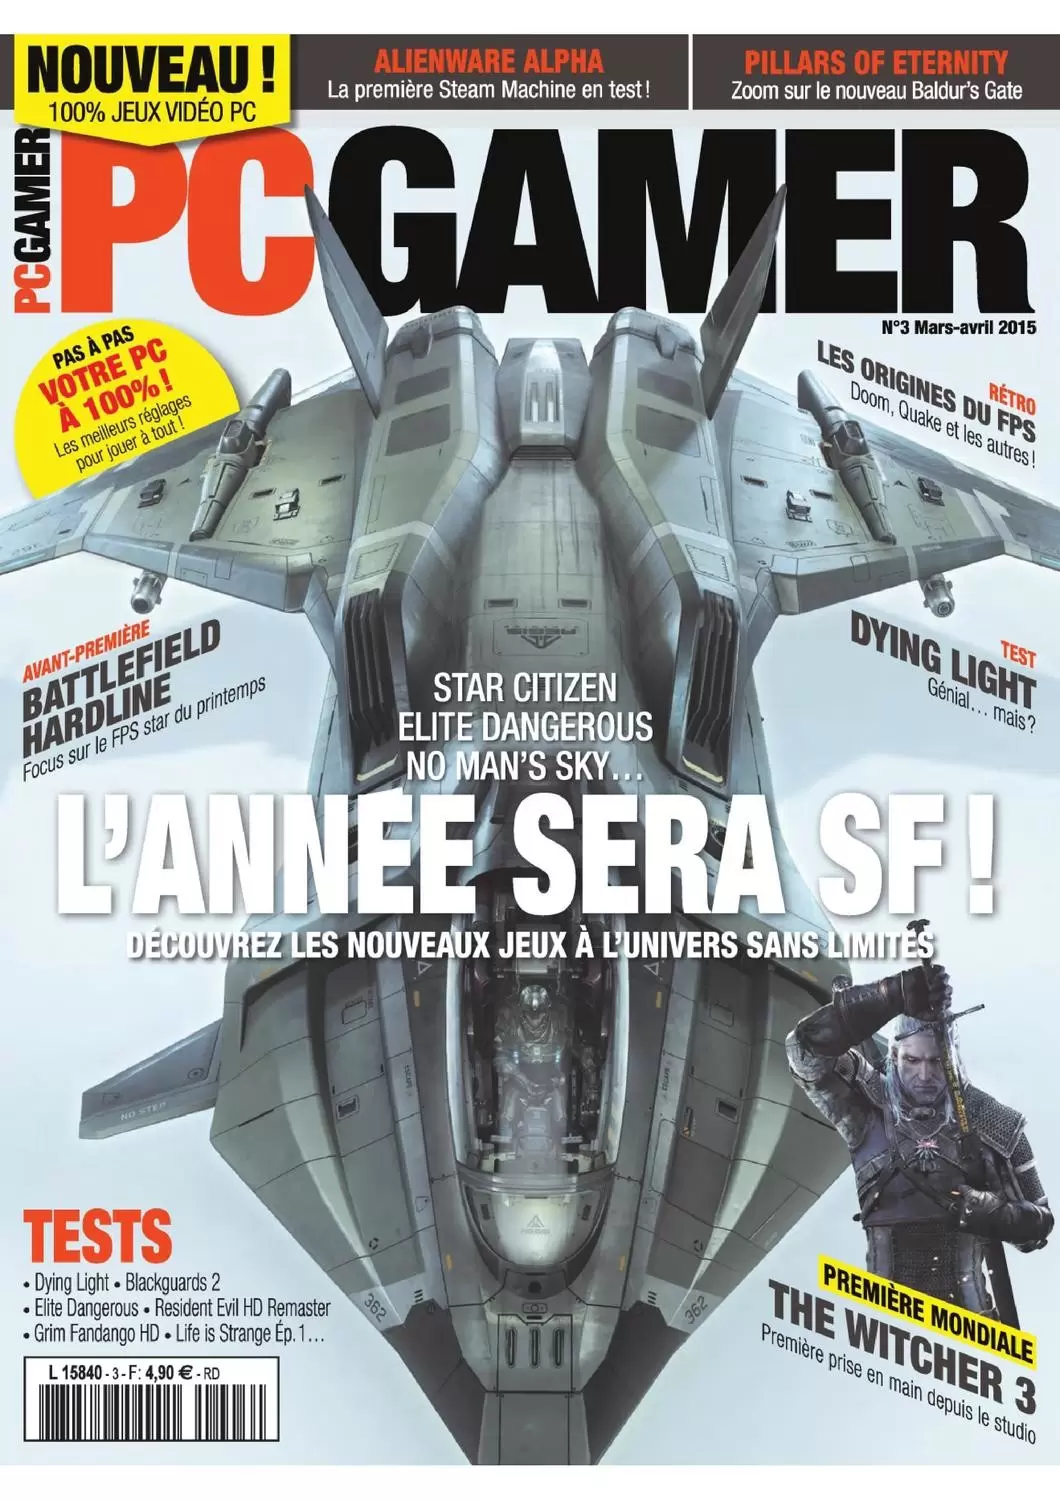 PC Gamer - PC Gamer n°3